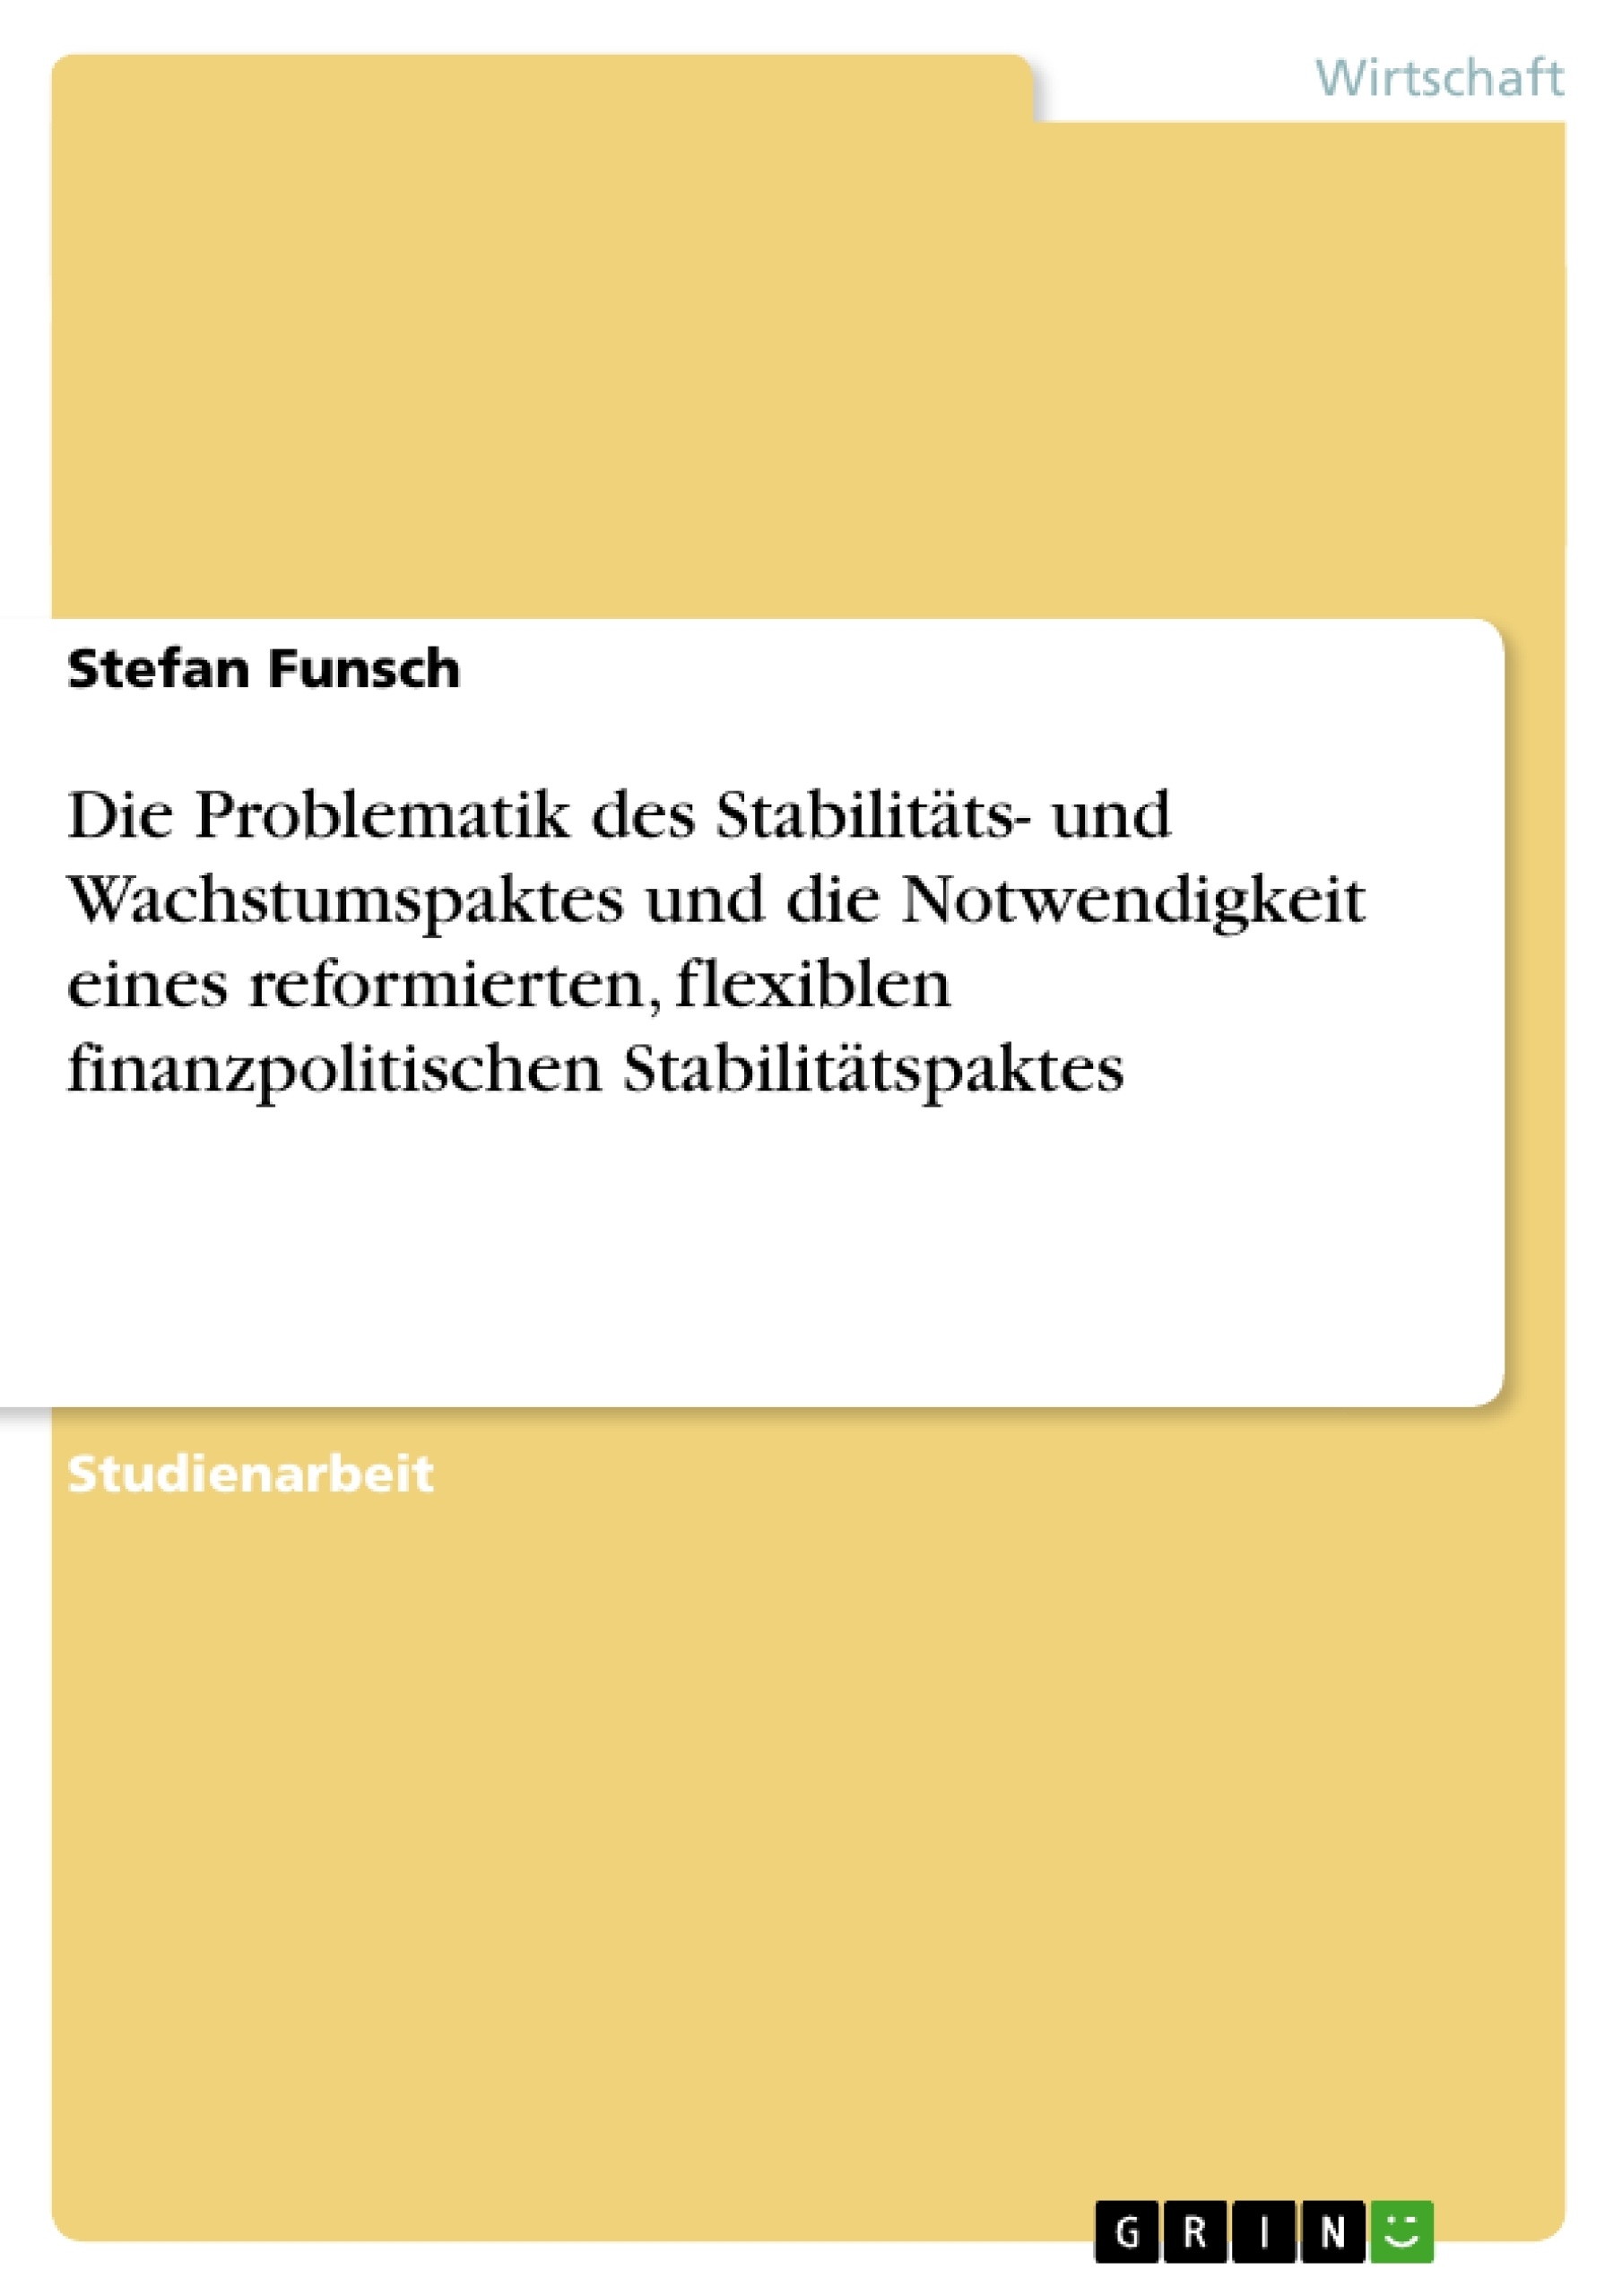 Title: Die Problematik des Stabilitäts- und Wachstumspaktes und die Notwendigkeit eines reformierten, flexiblen finanzpolitischen Stabilitätspaktes